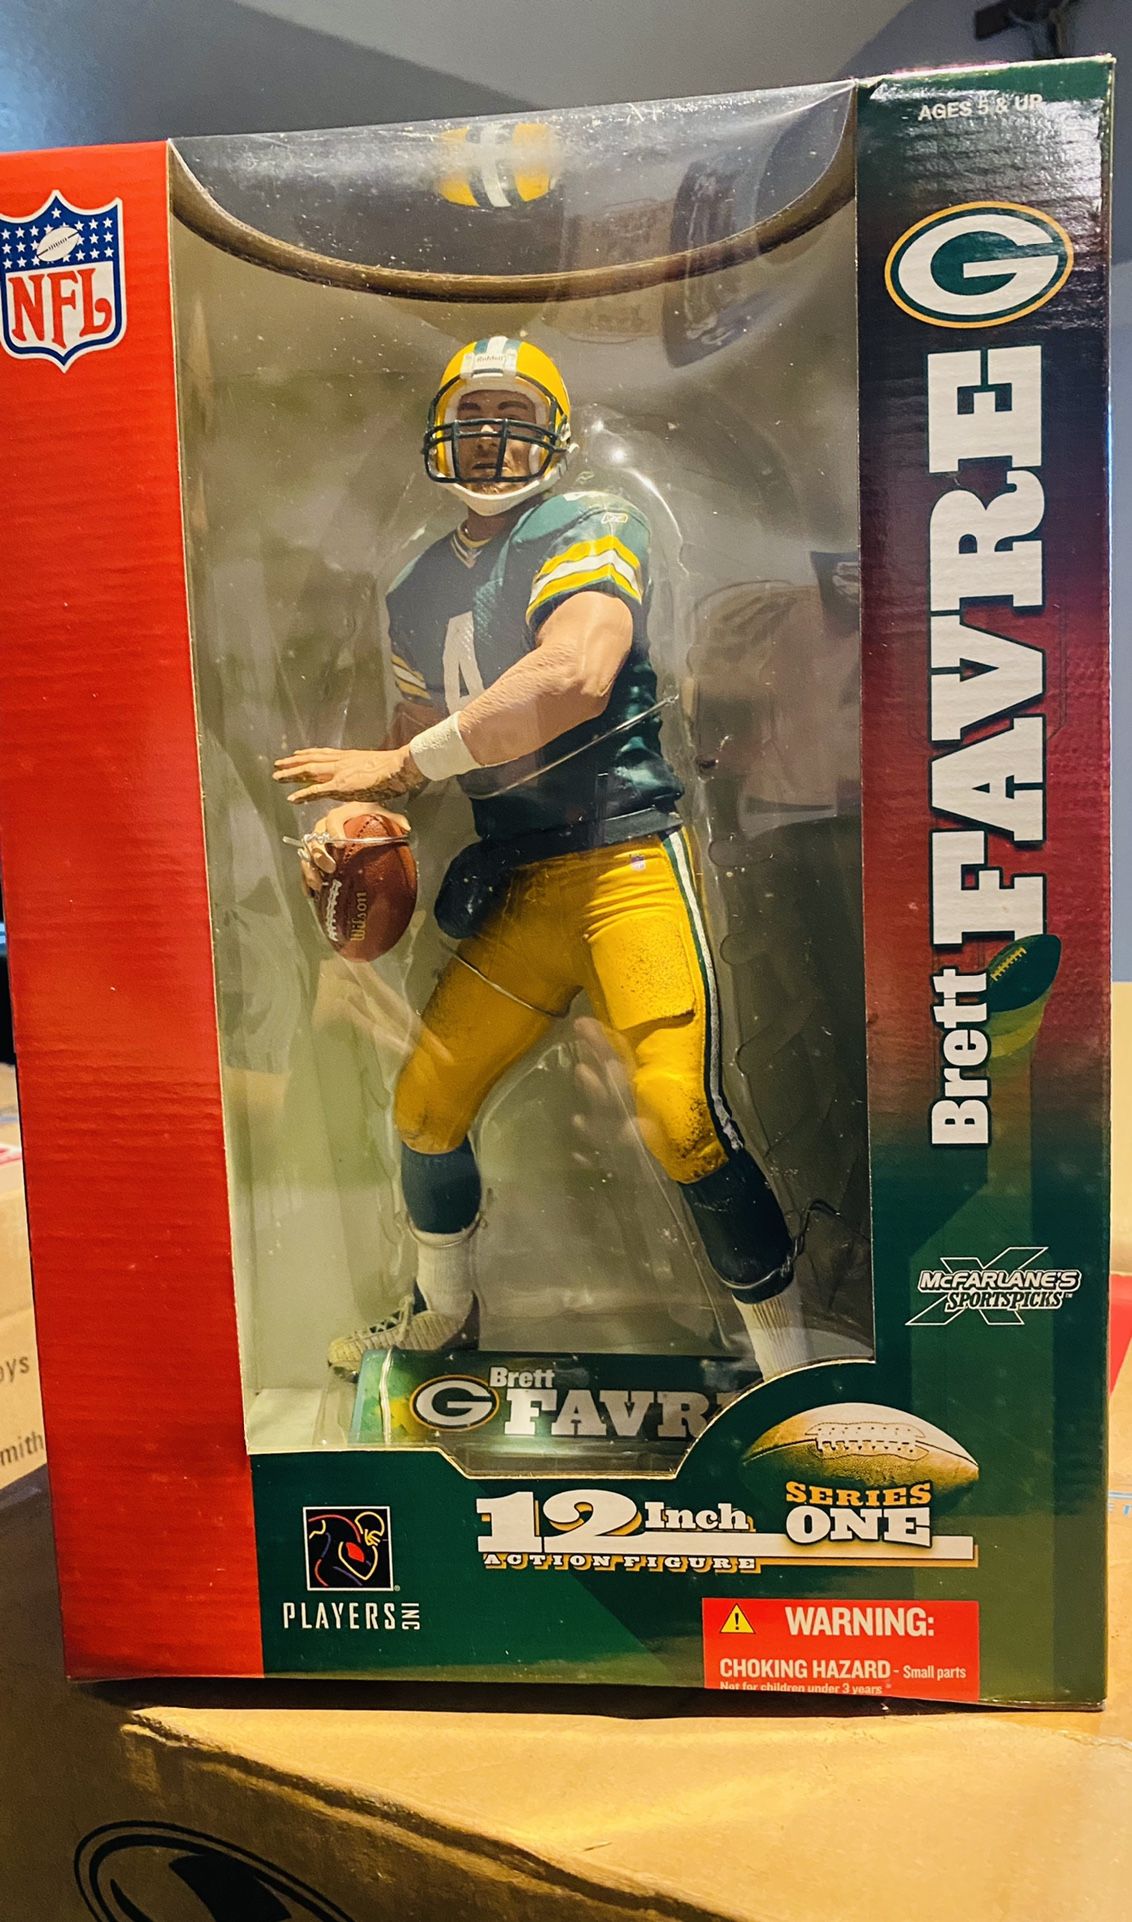 12” McFarlane Toys Series 1 NFL Action Figure “Brett Favre”( Rare)